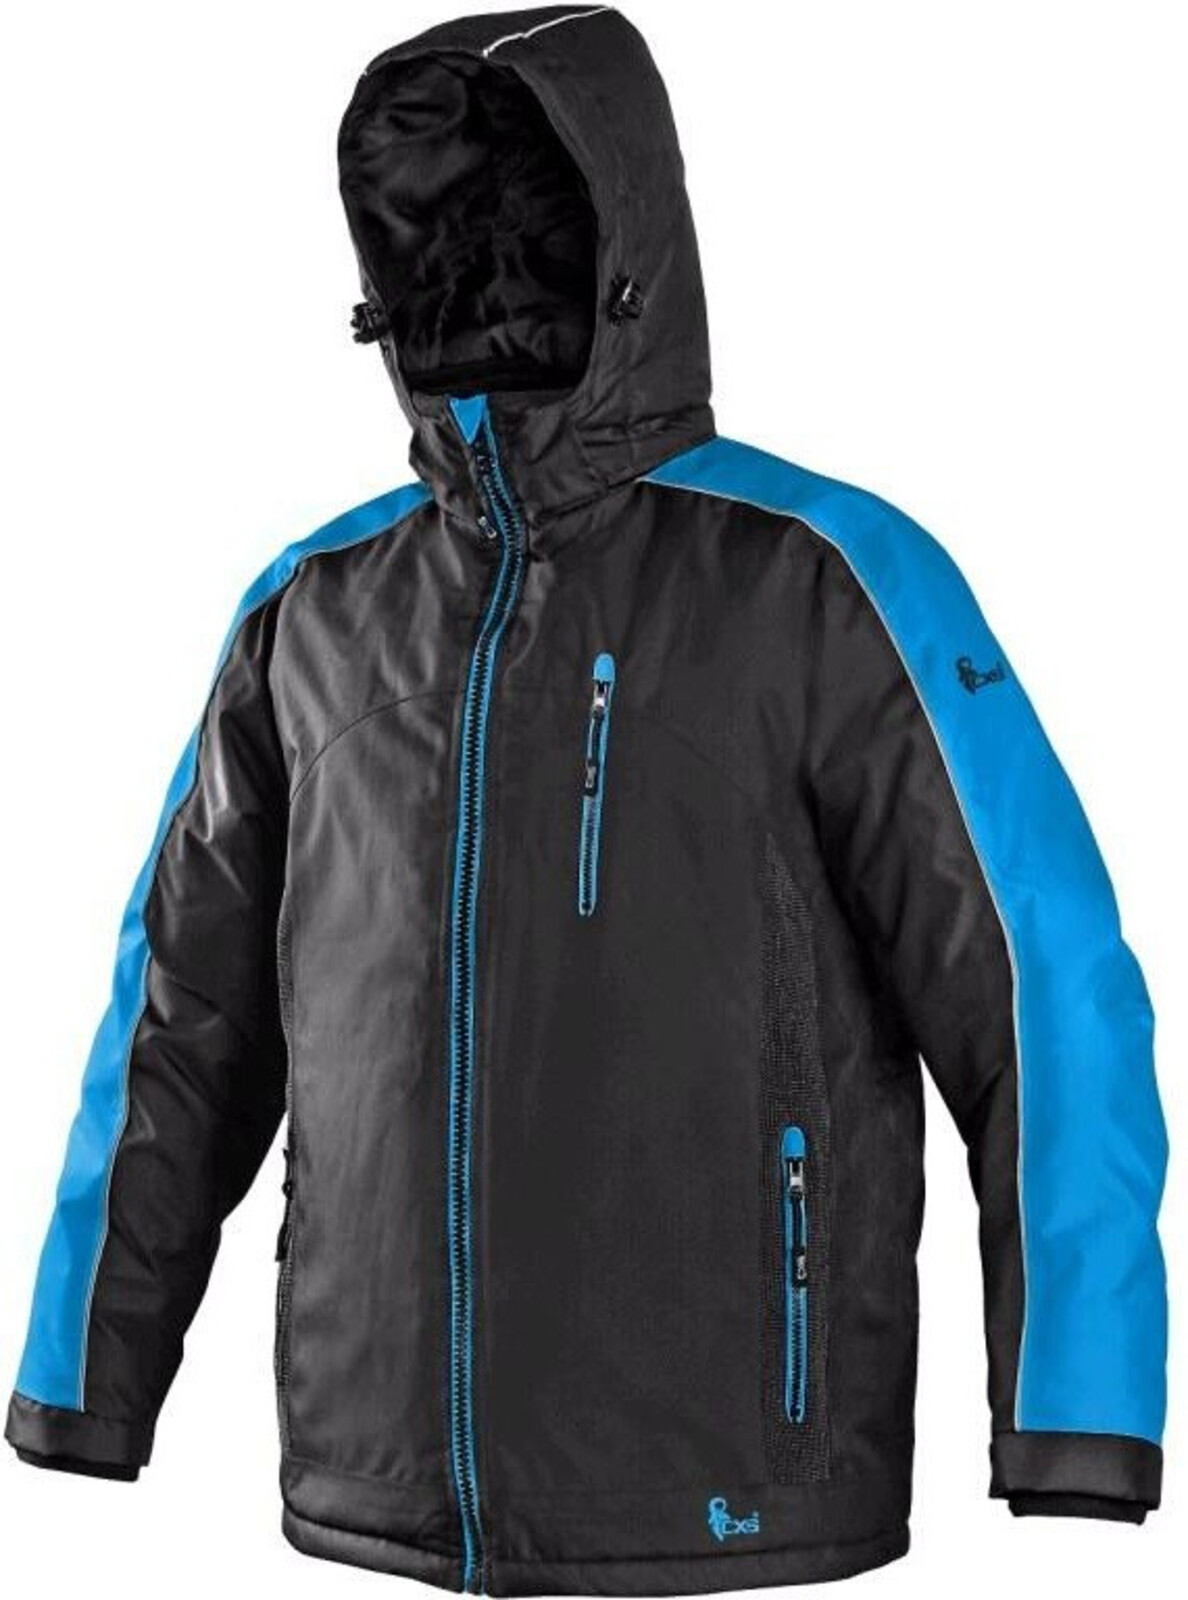 Pánska zimná bunda CXS Brighton - veľkosť: M, farba: čierna/modrá